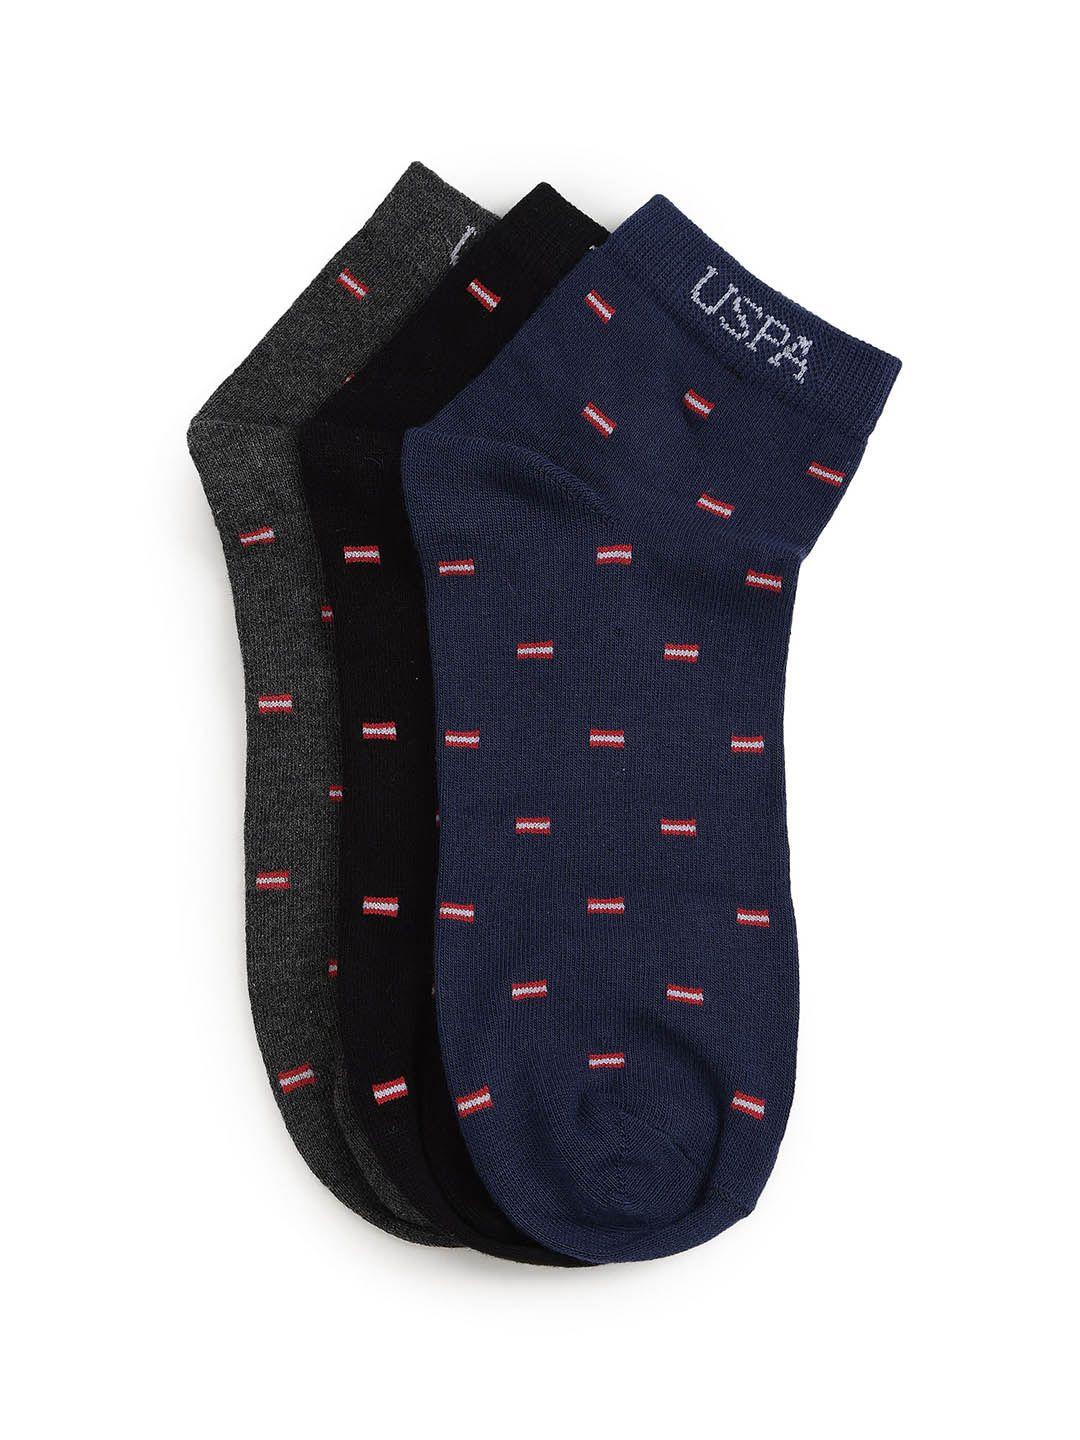 u.s. polo assn. men pack of 3 patterned ankle length socks